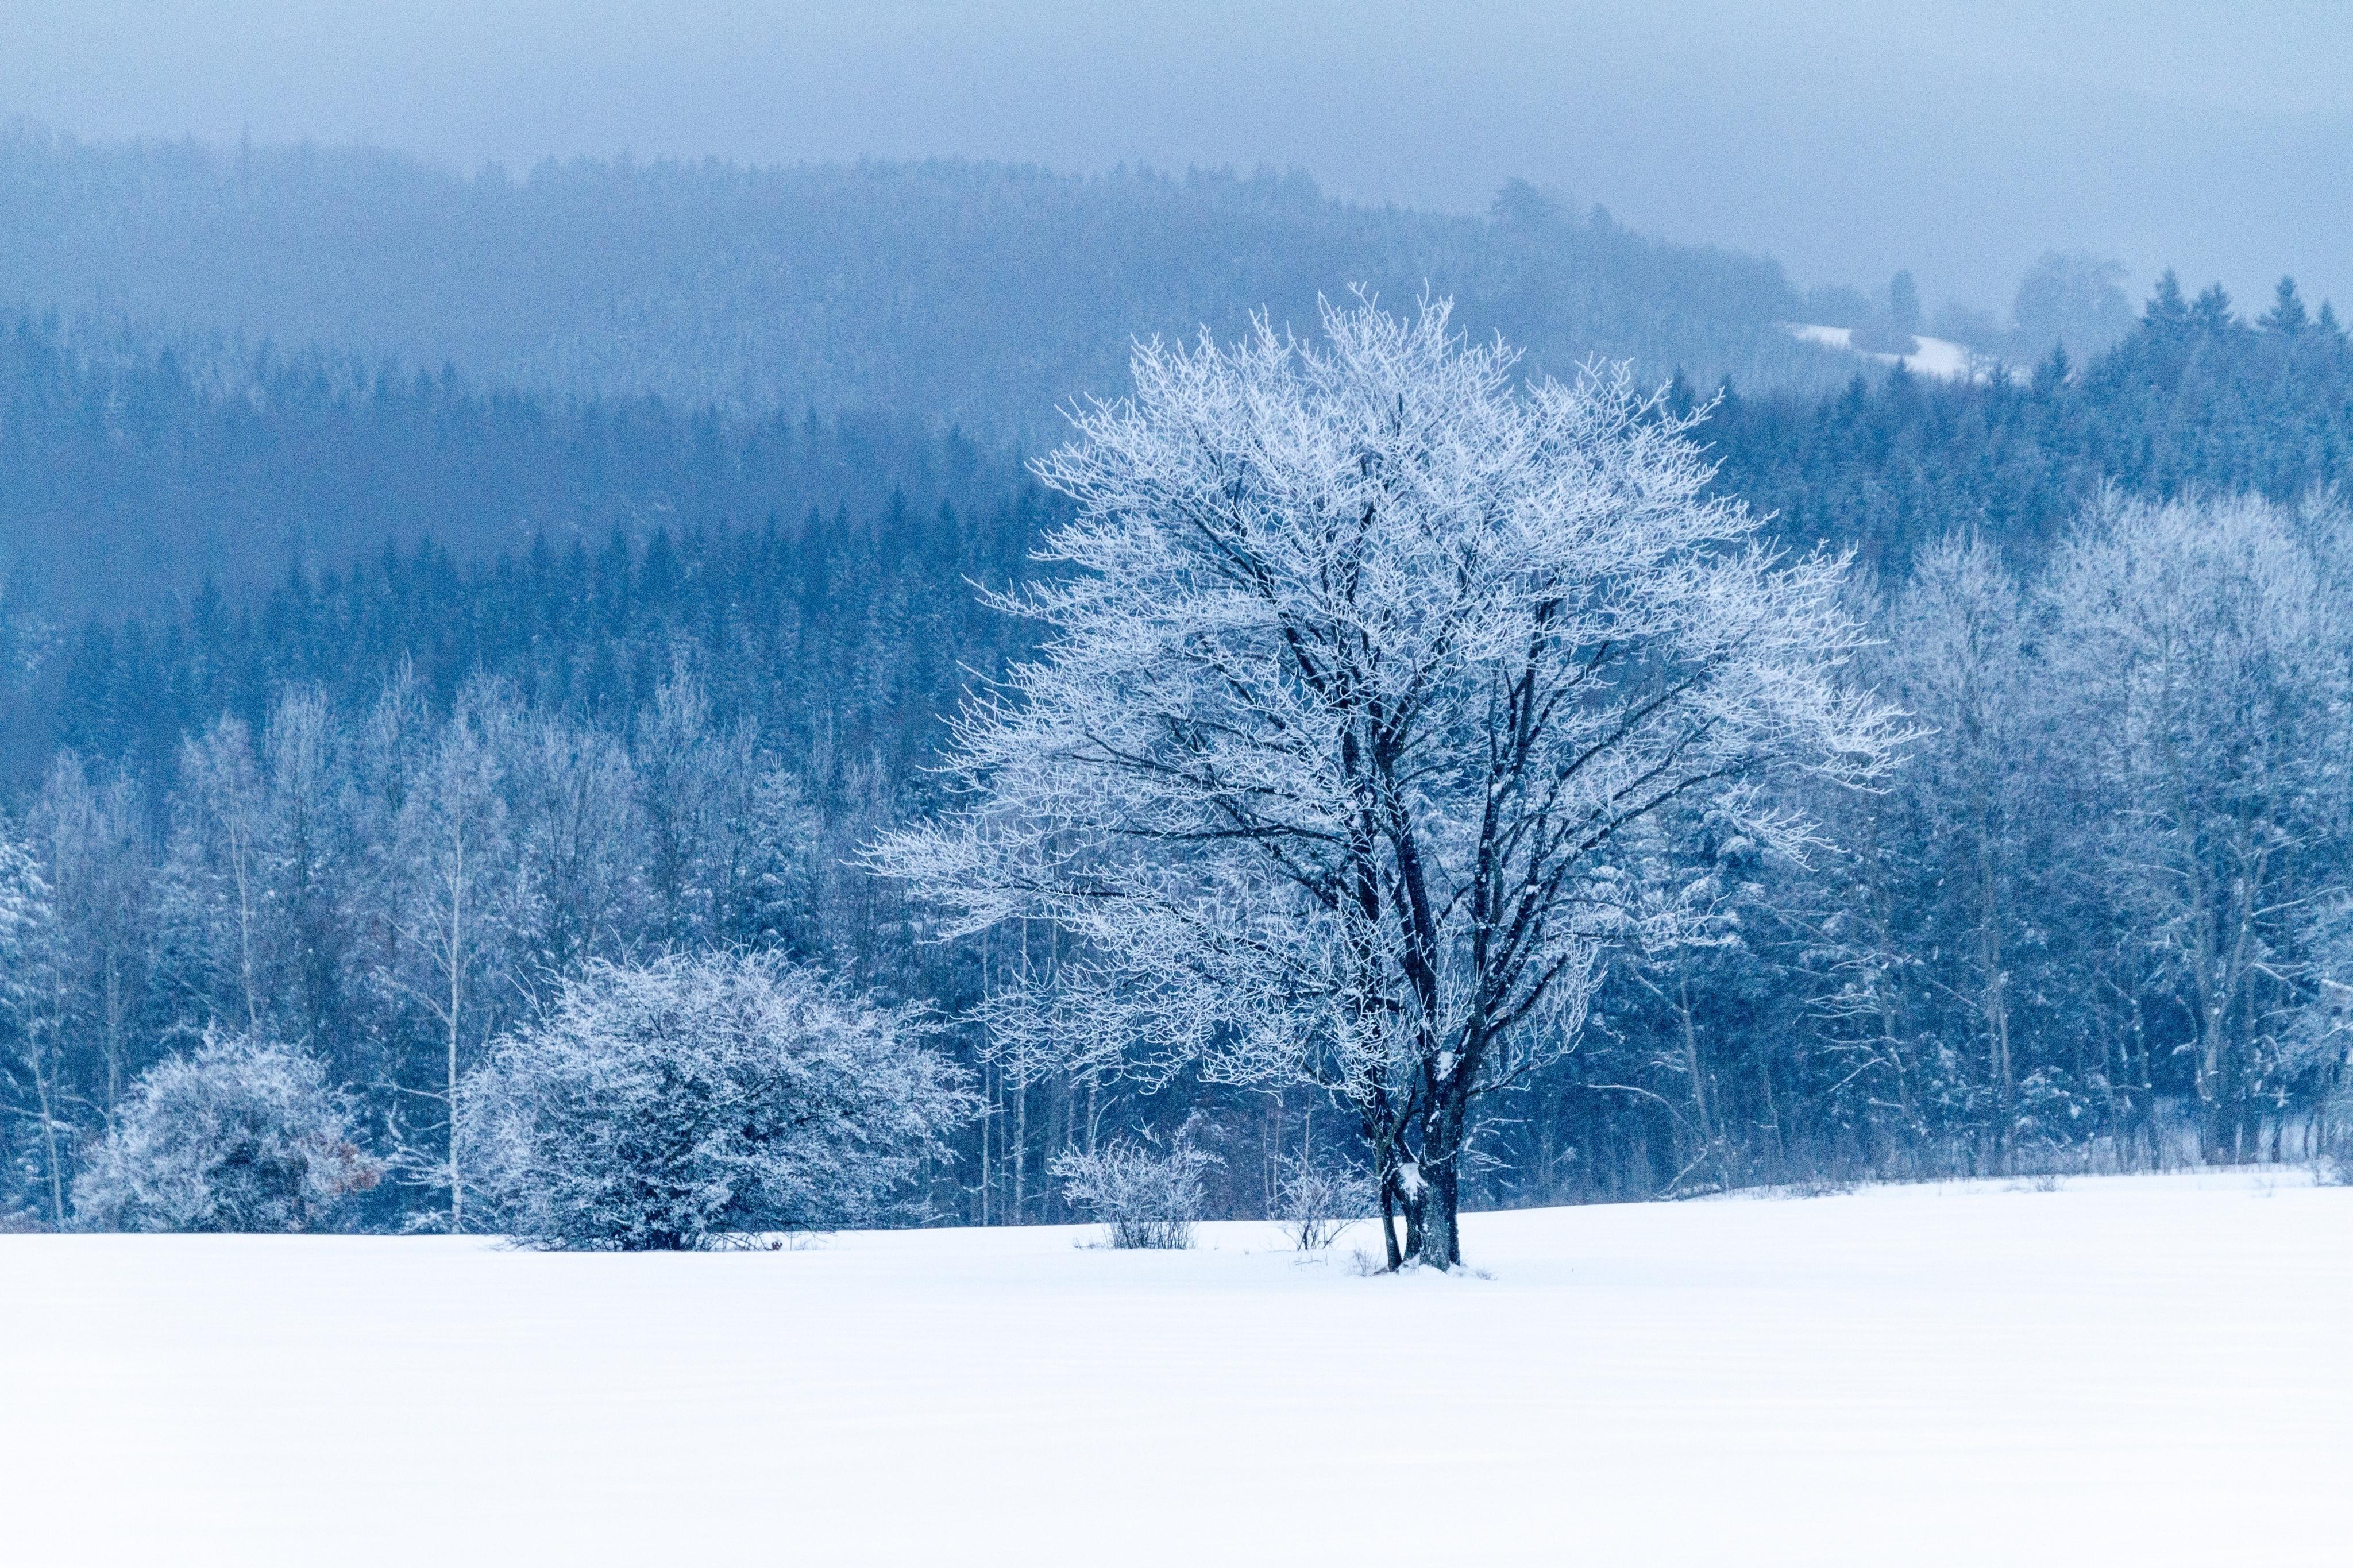 雪中的树冷色风景桌面壁纸大全 雪中的树冷色风景桌面壁纸大全专辑下载-找素材网